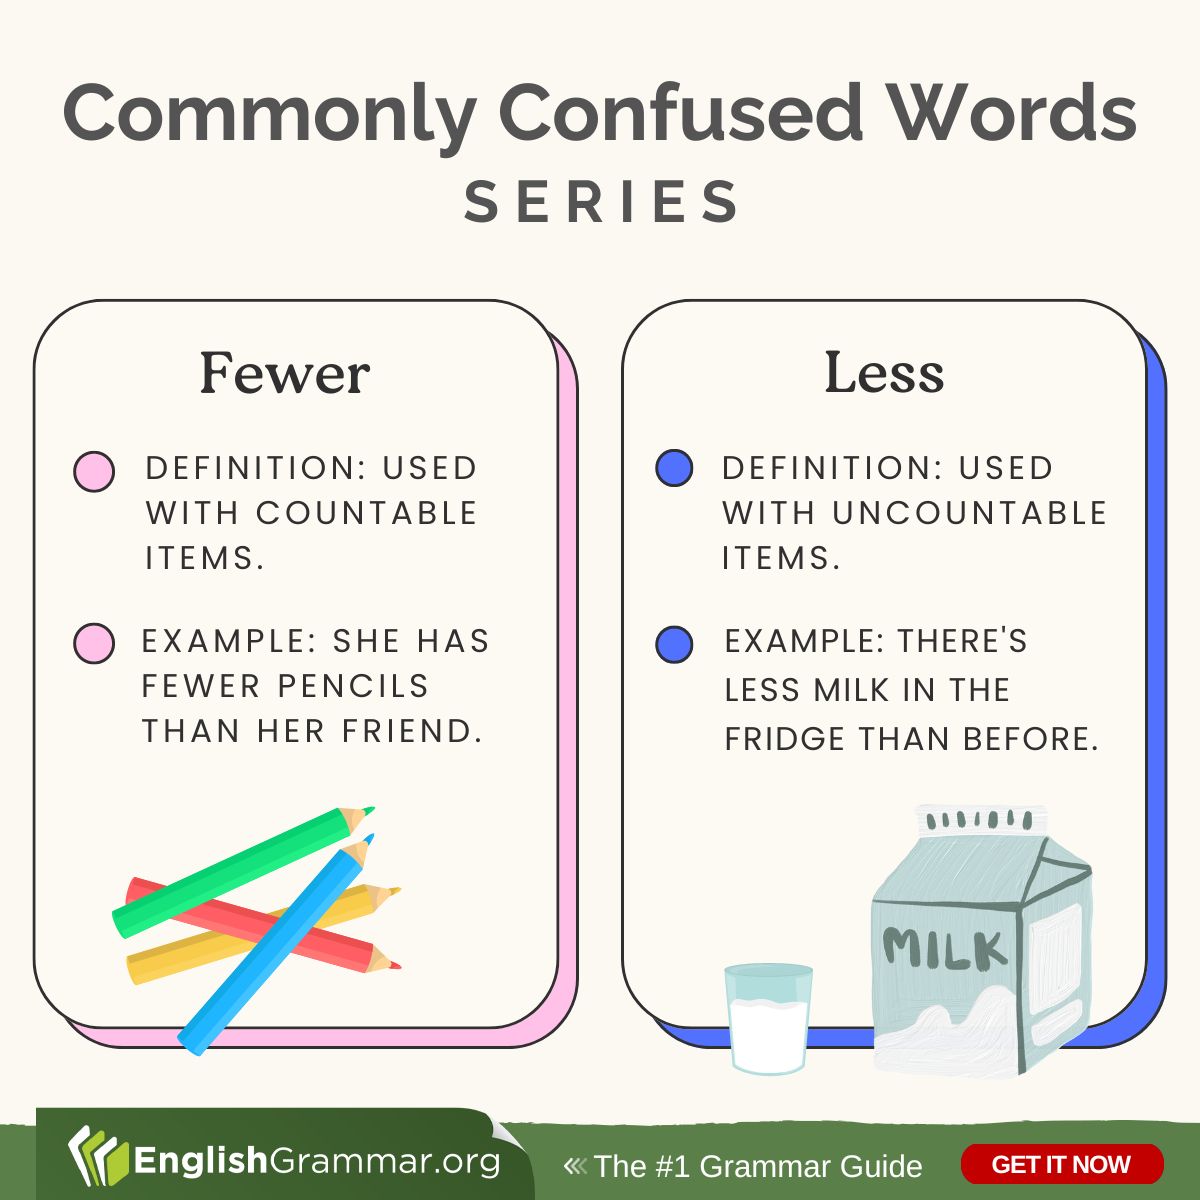 Fewer vs. Less #vocabulary #amwriting #writing